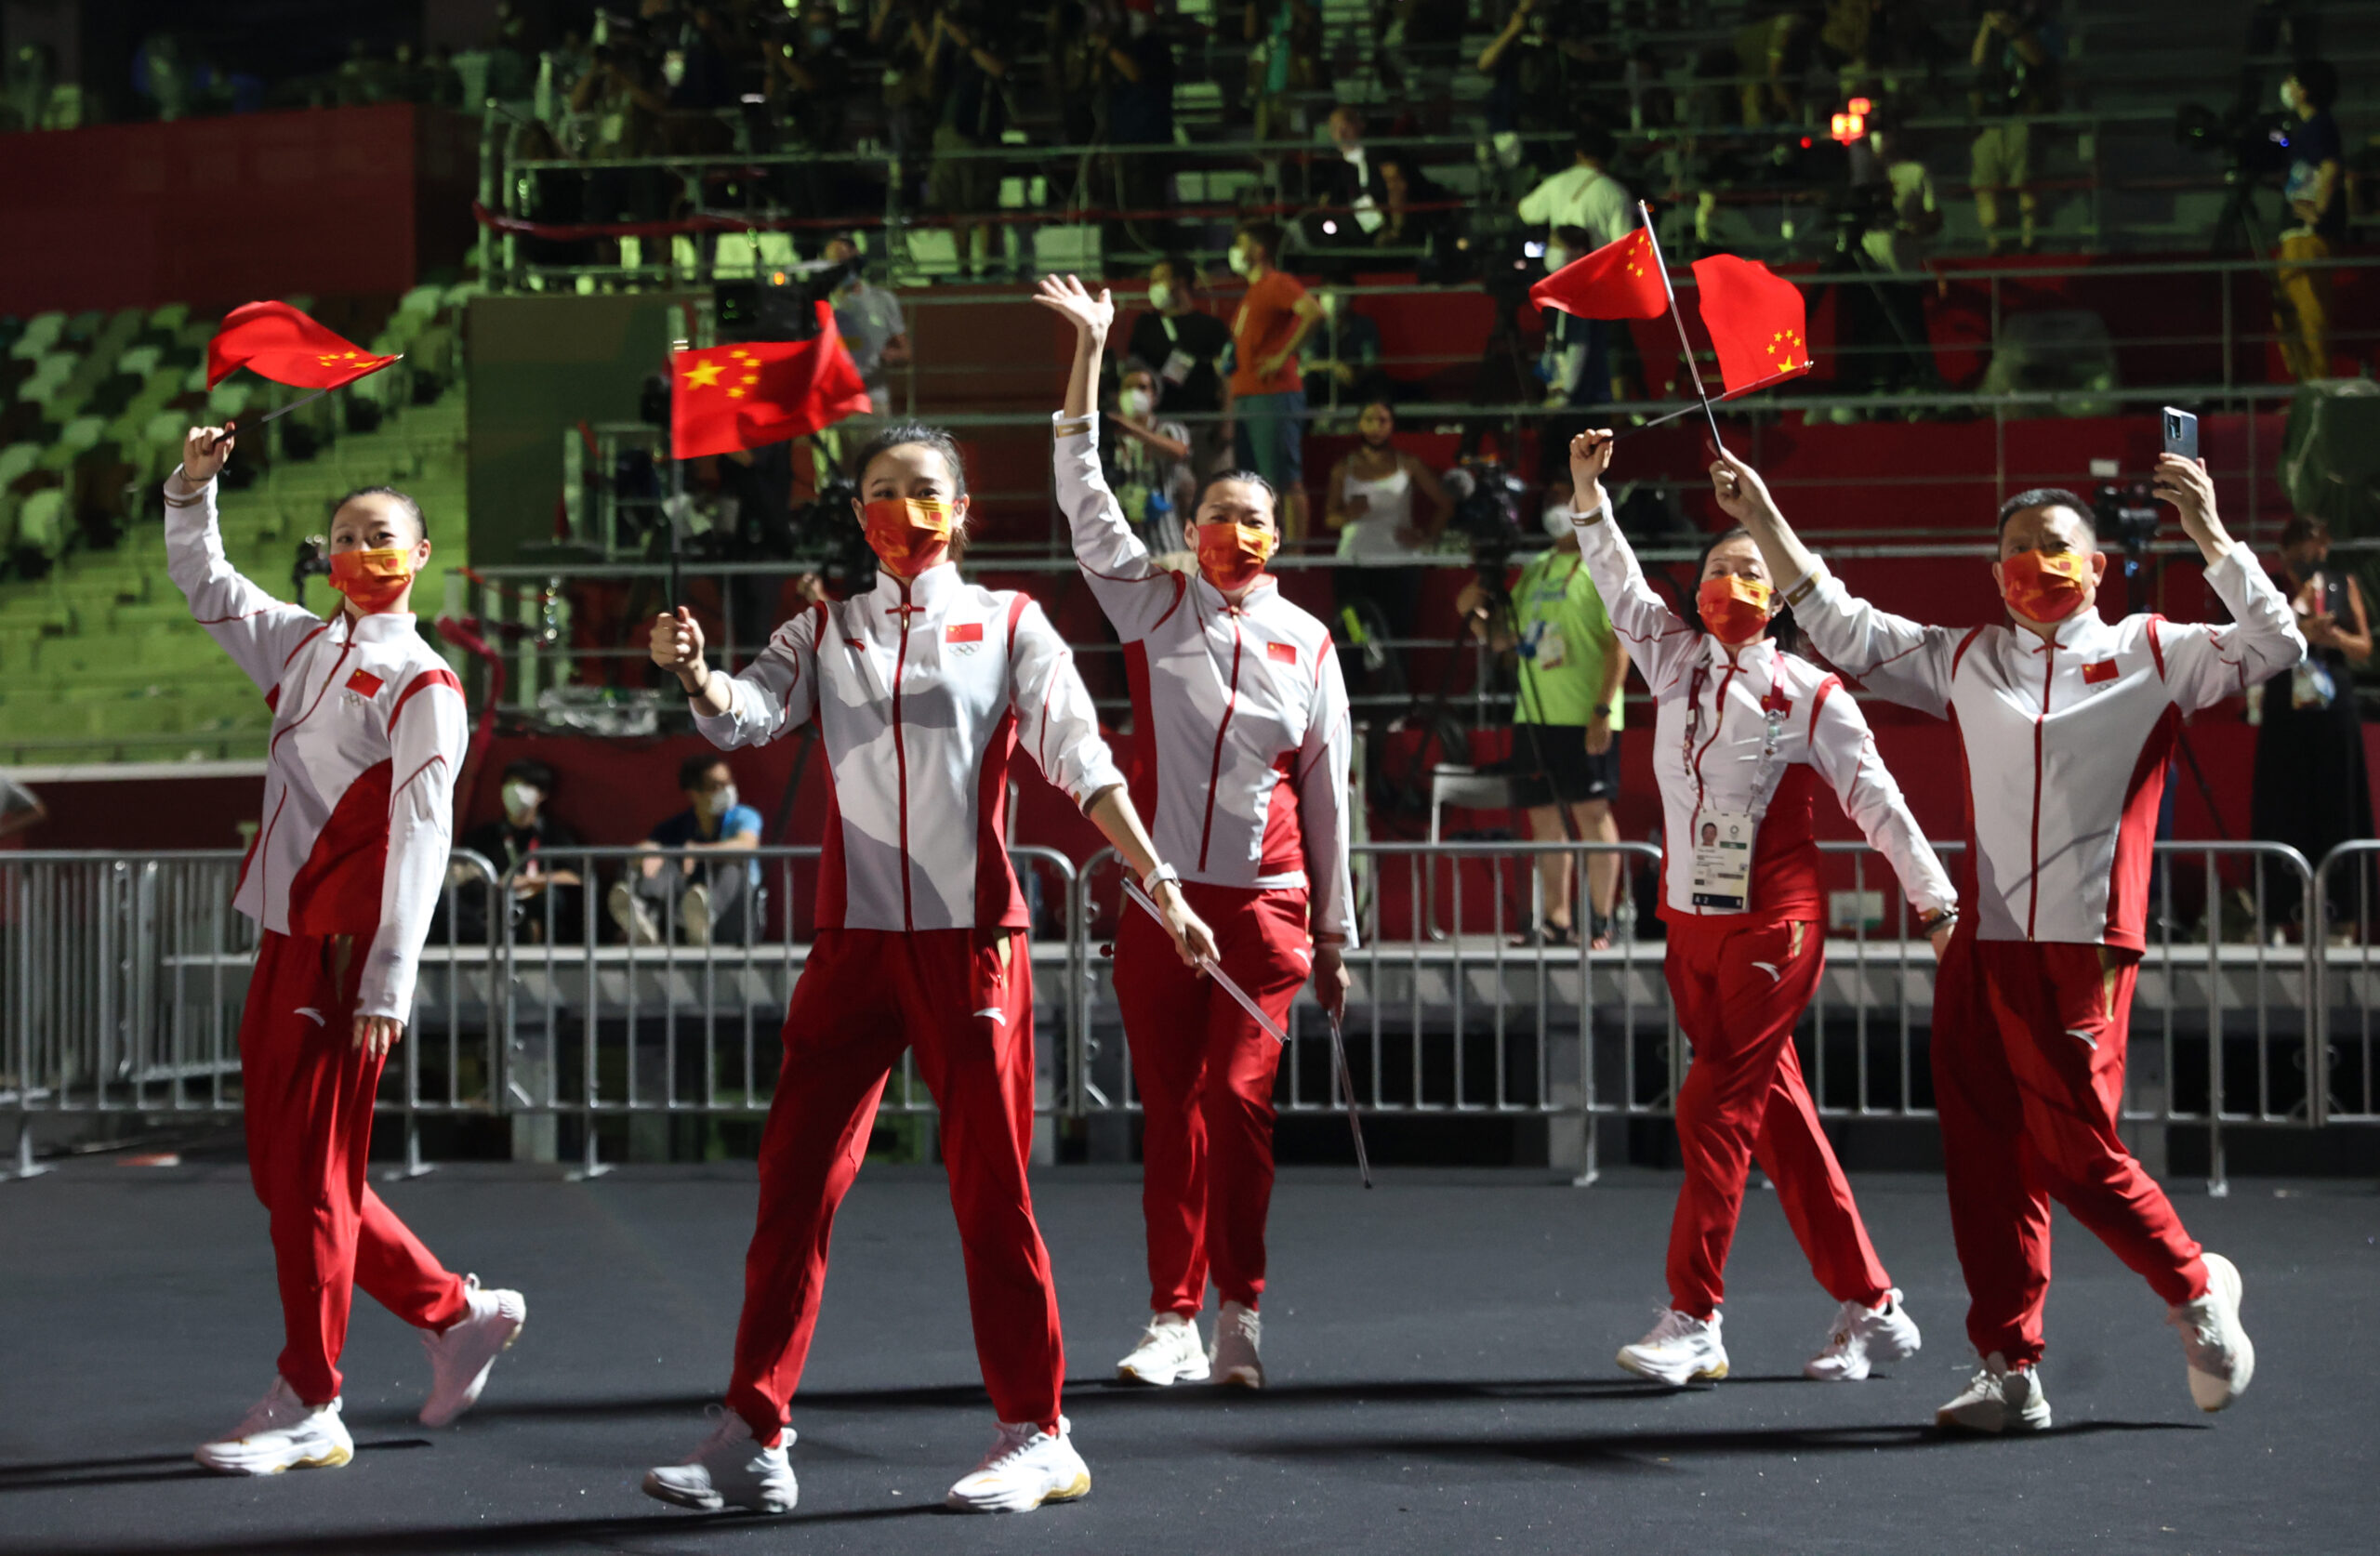 ทางการจีนแสดงความยินดี 'ทัพนักกีฬา' สร้างผลงานในโอลิมปิก